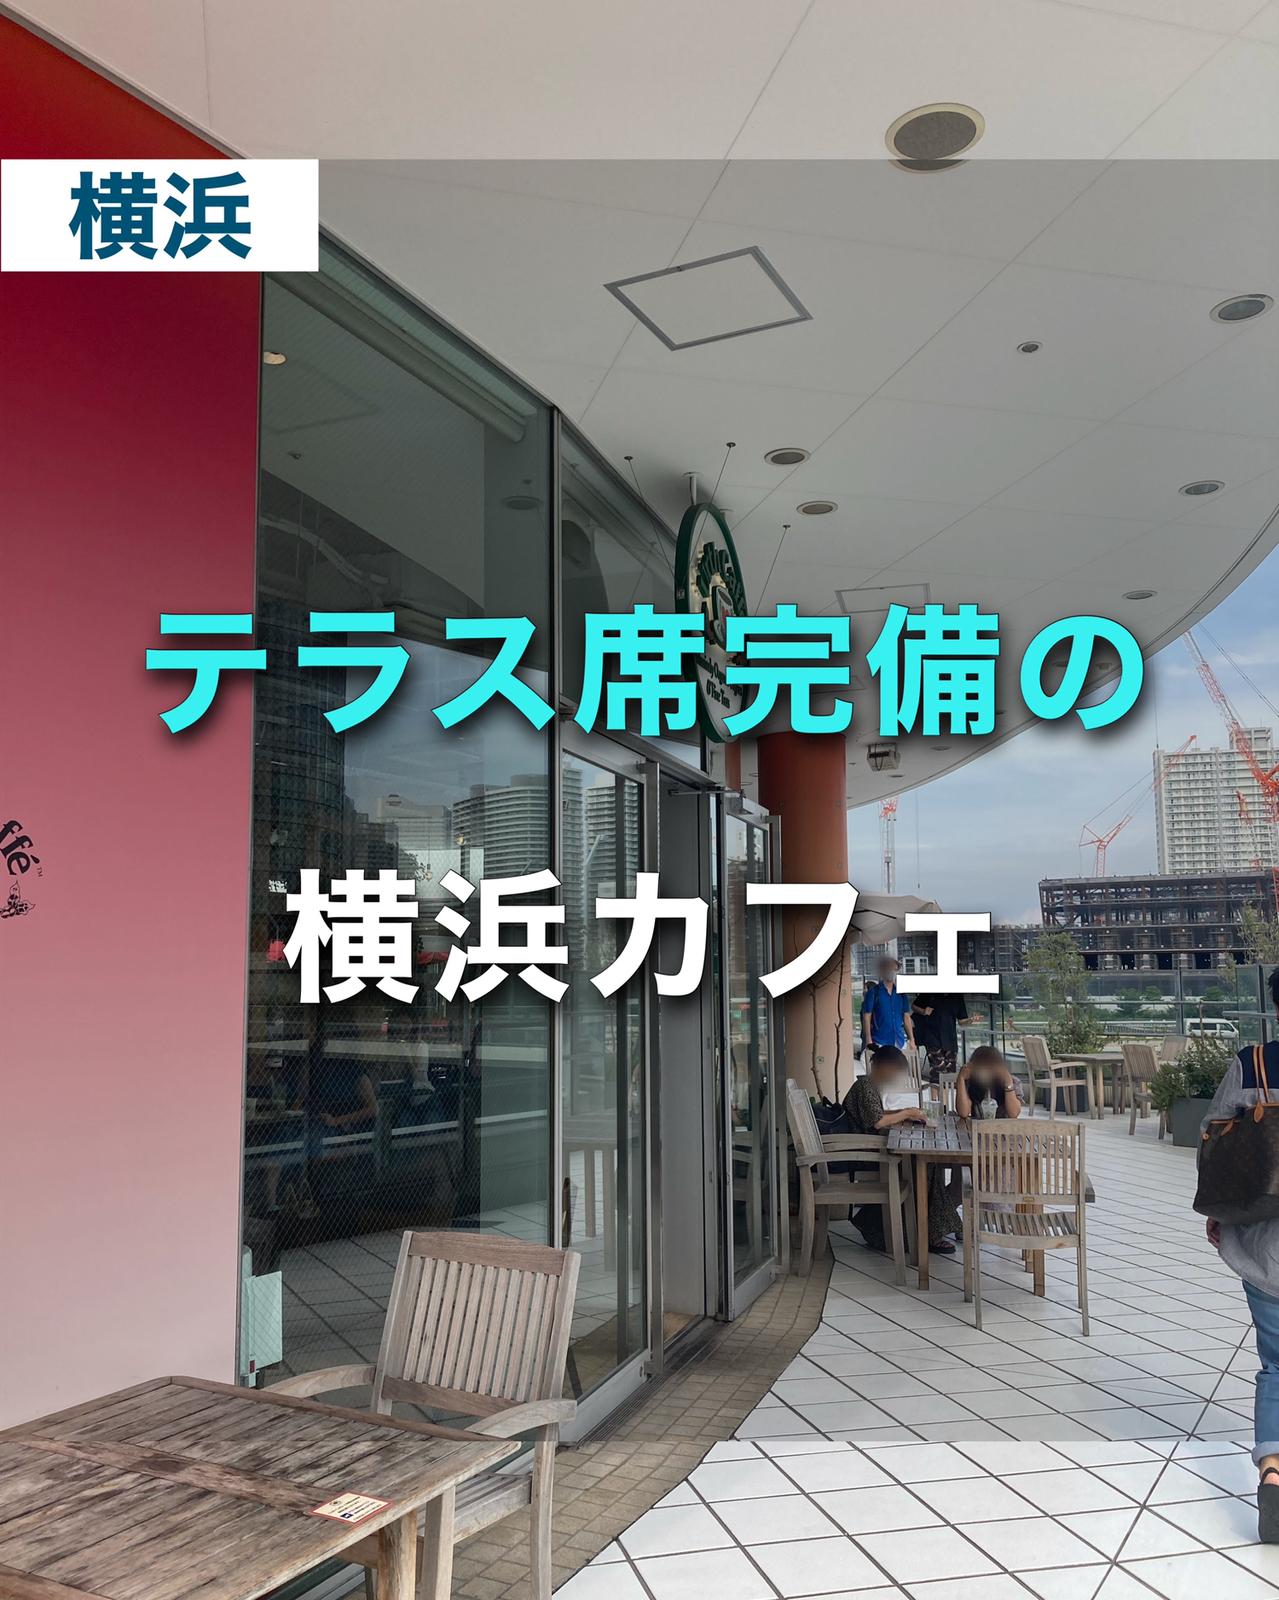 テラス席完備 横浜駅近くのオススメカフェ ゆき カフェ巡り 東京 神奈川が投稿したフォトブック Sharee